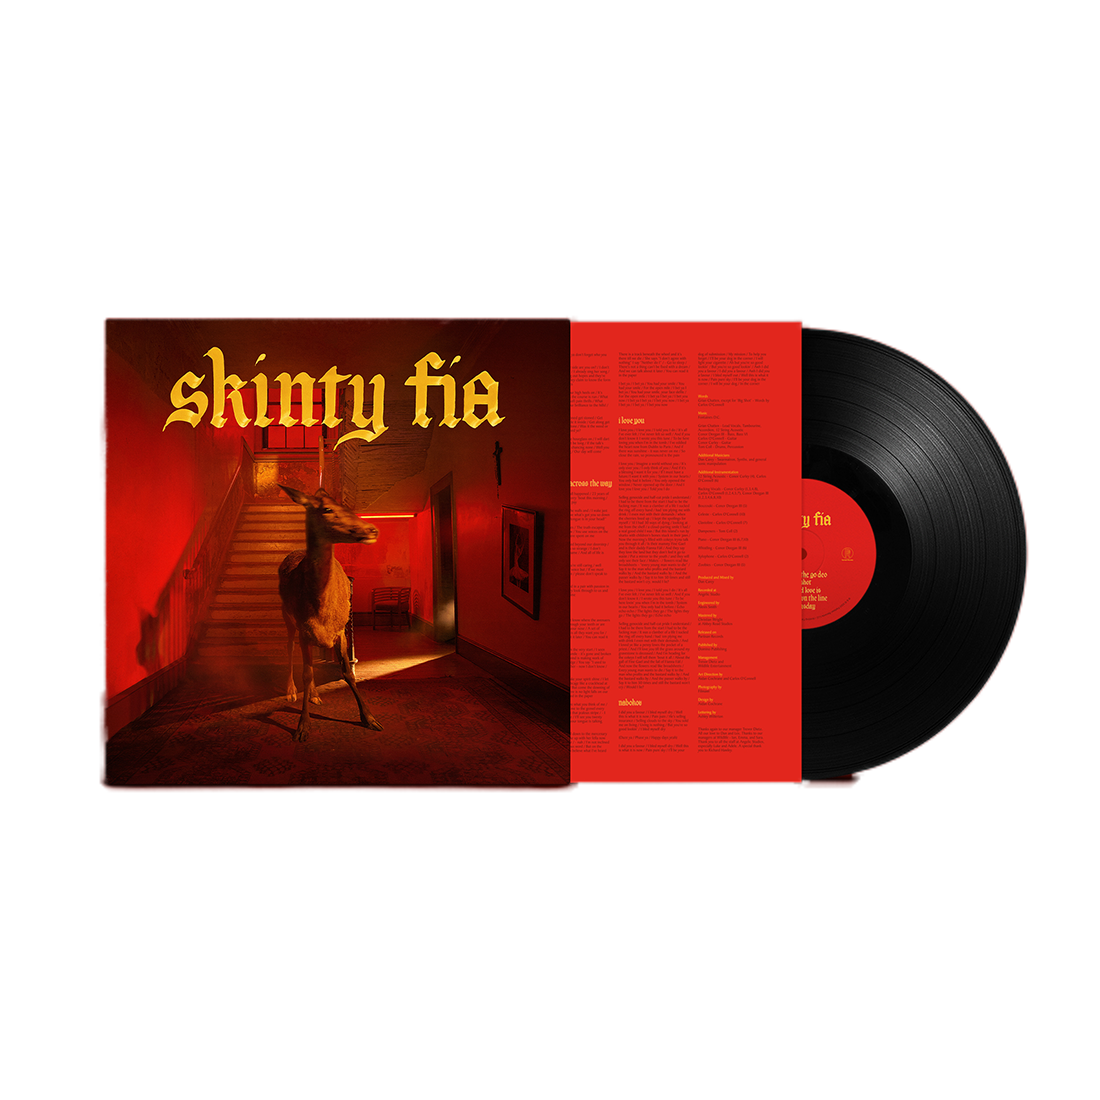 Fontaines D.C. - Skinty Fia: Vinyl LP